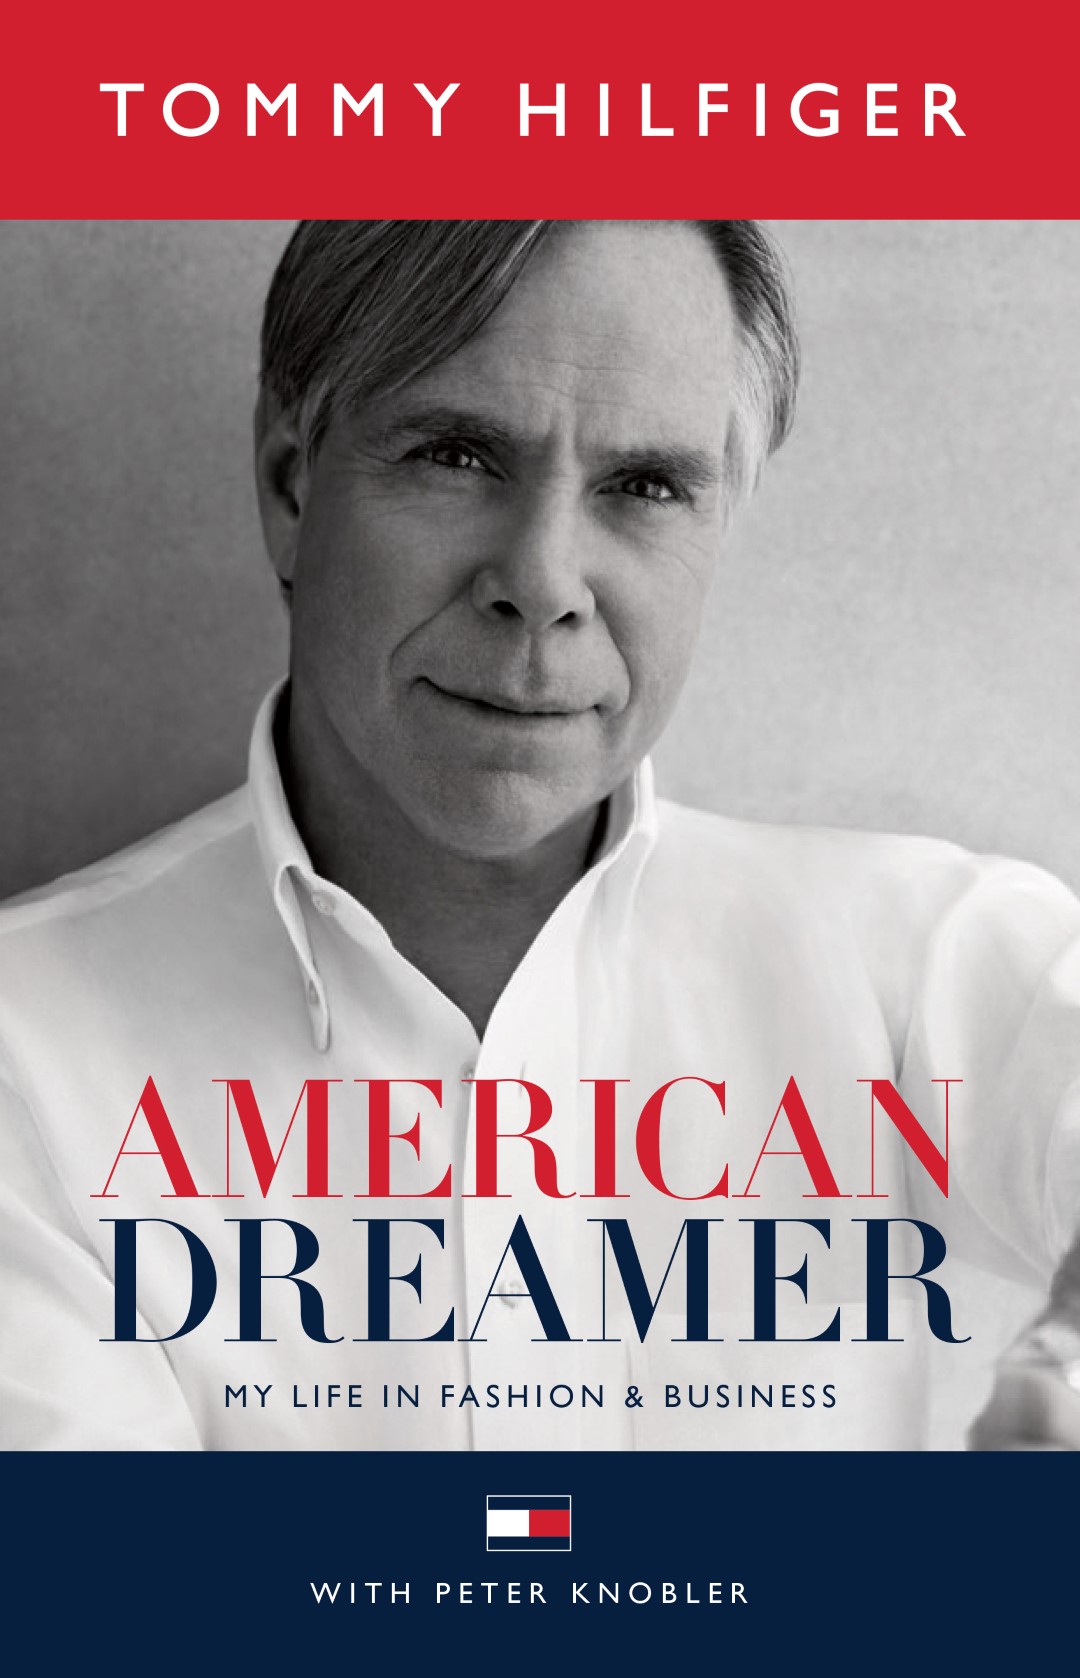 Tommy Hilfiger libro: la copertina dell’autobiografia American Dreamer